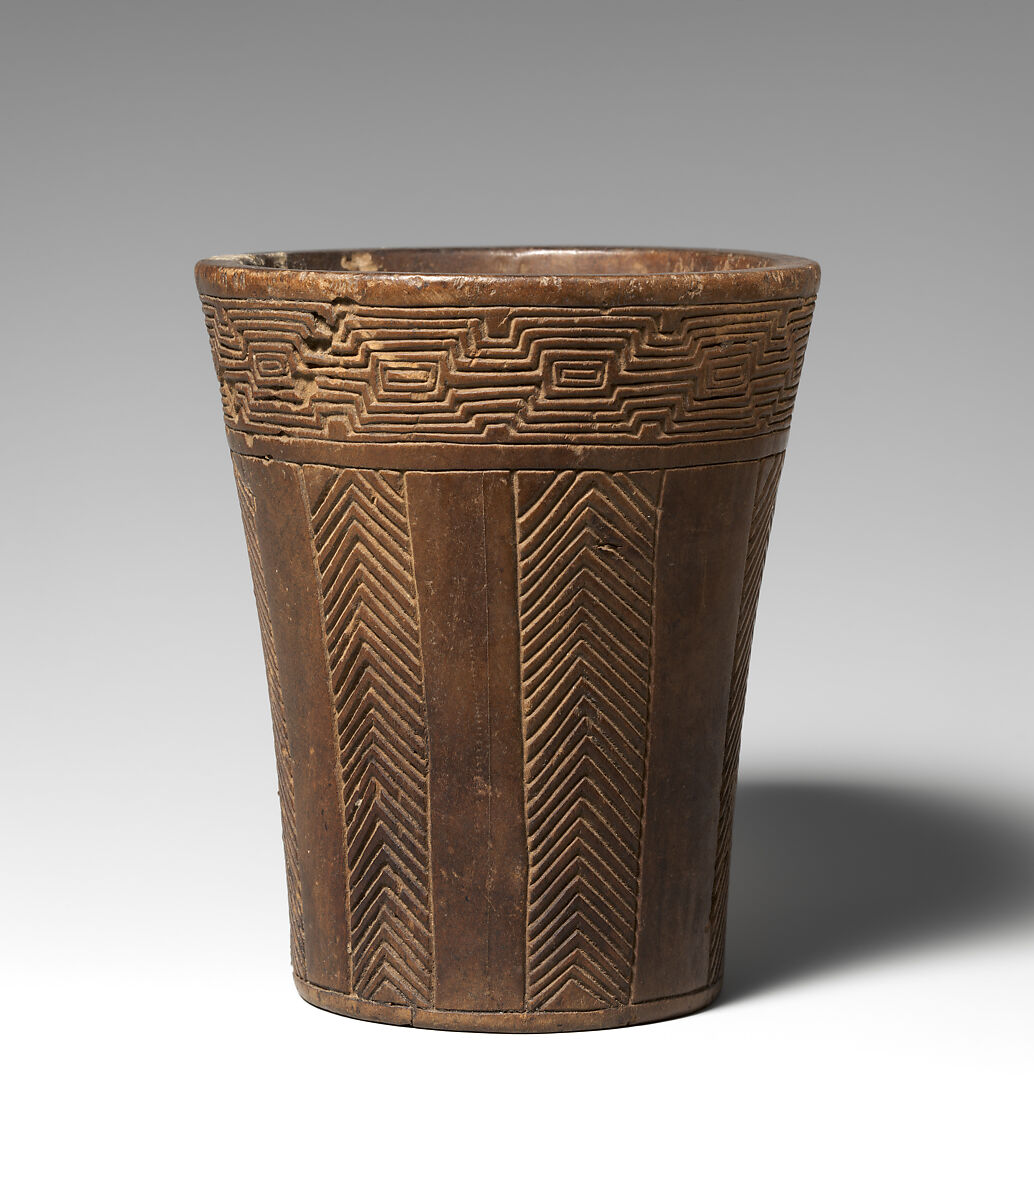 Kero (beaker), Inca artist(s), Wood, Inca 